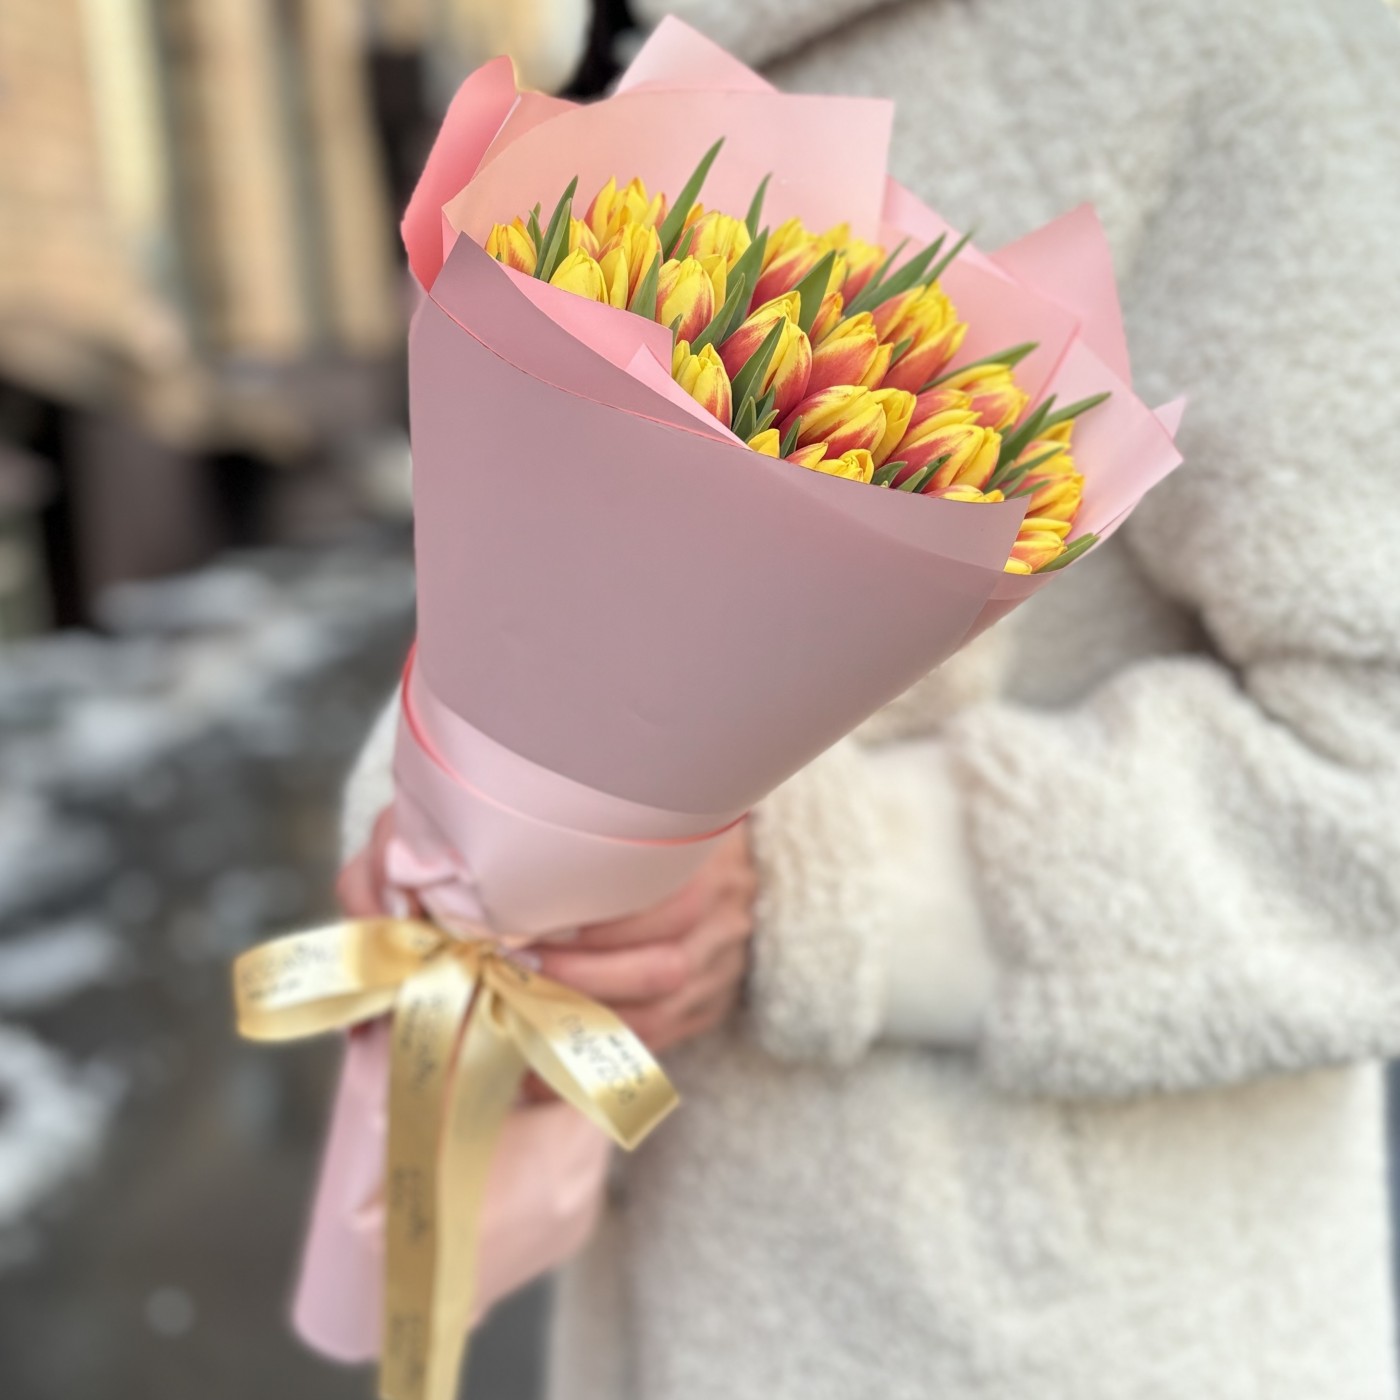 35 красно-желтых тюльпанов Денмарк